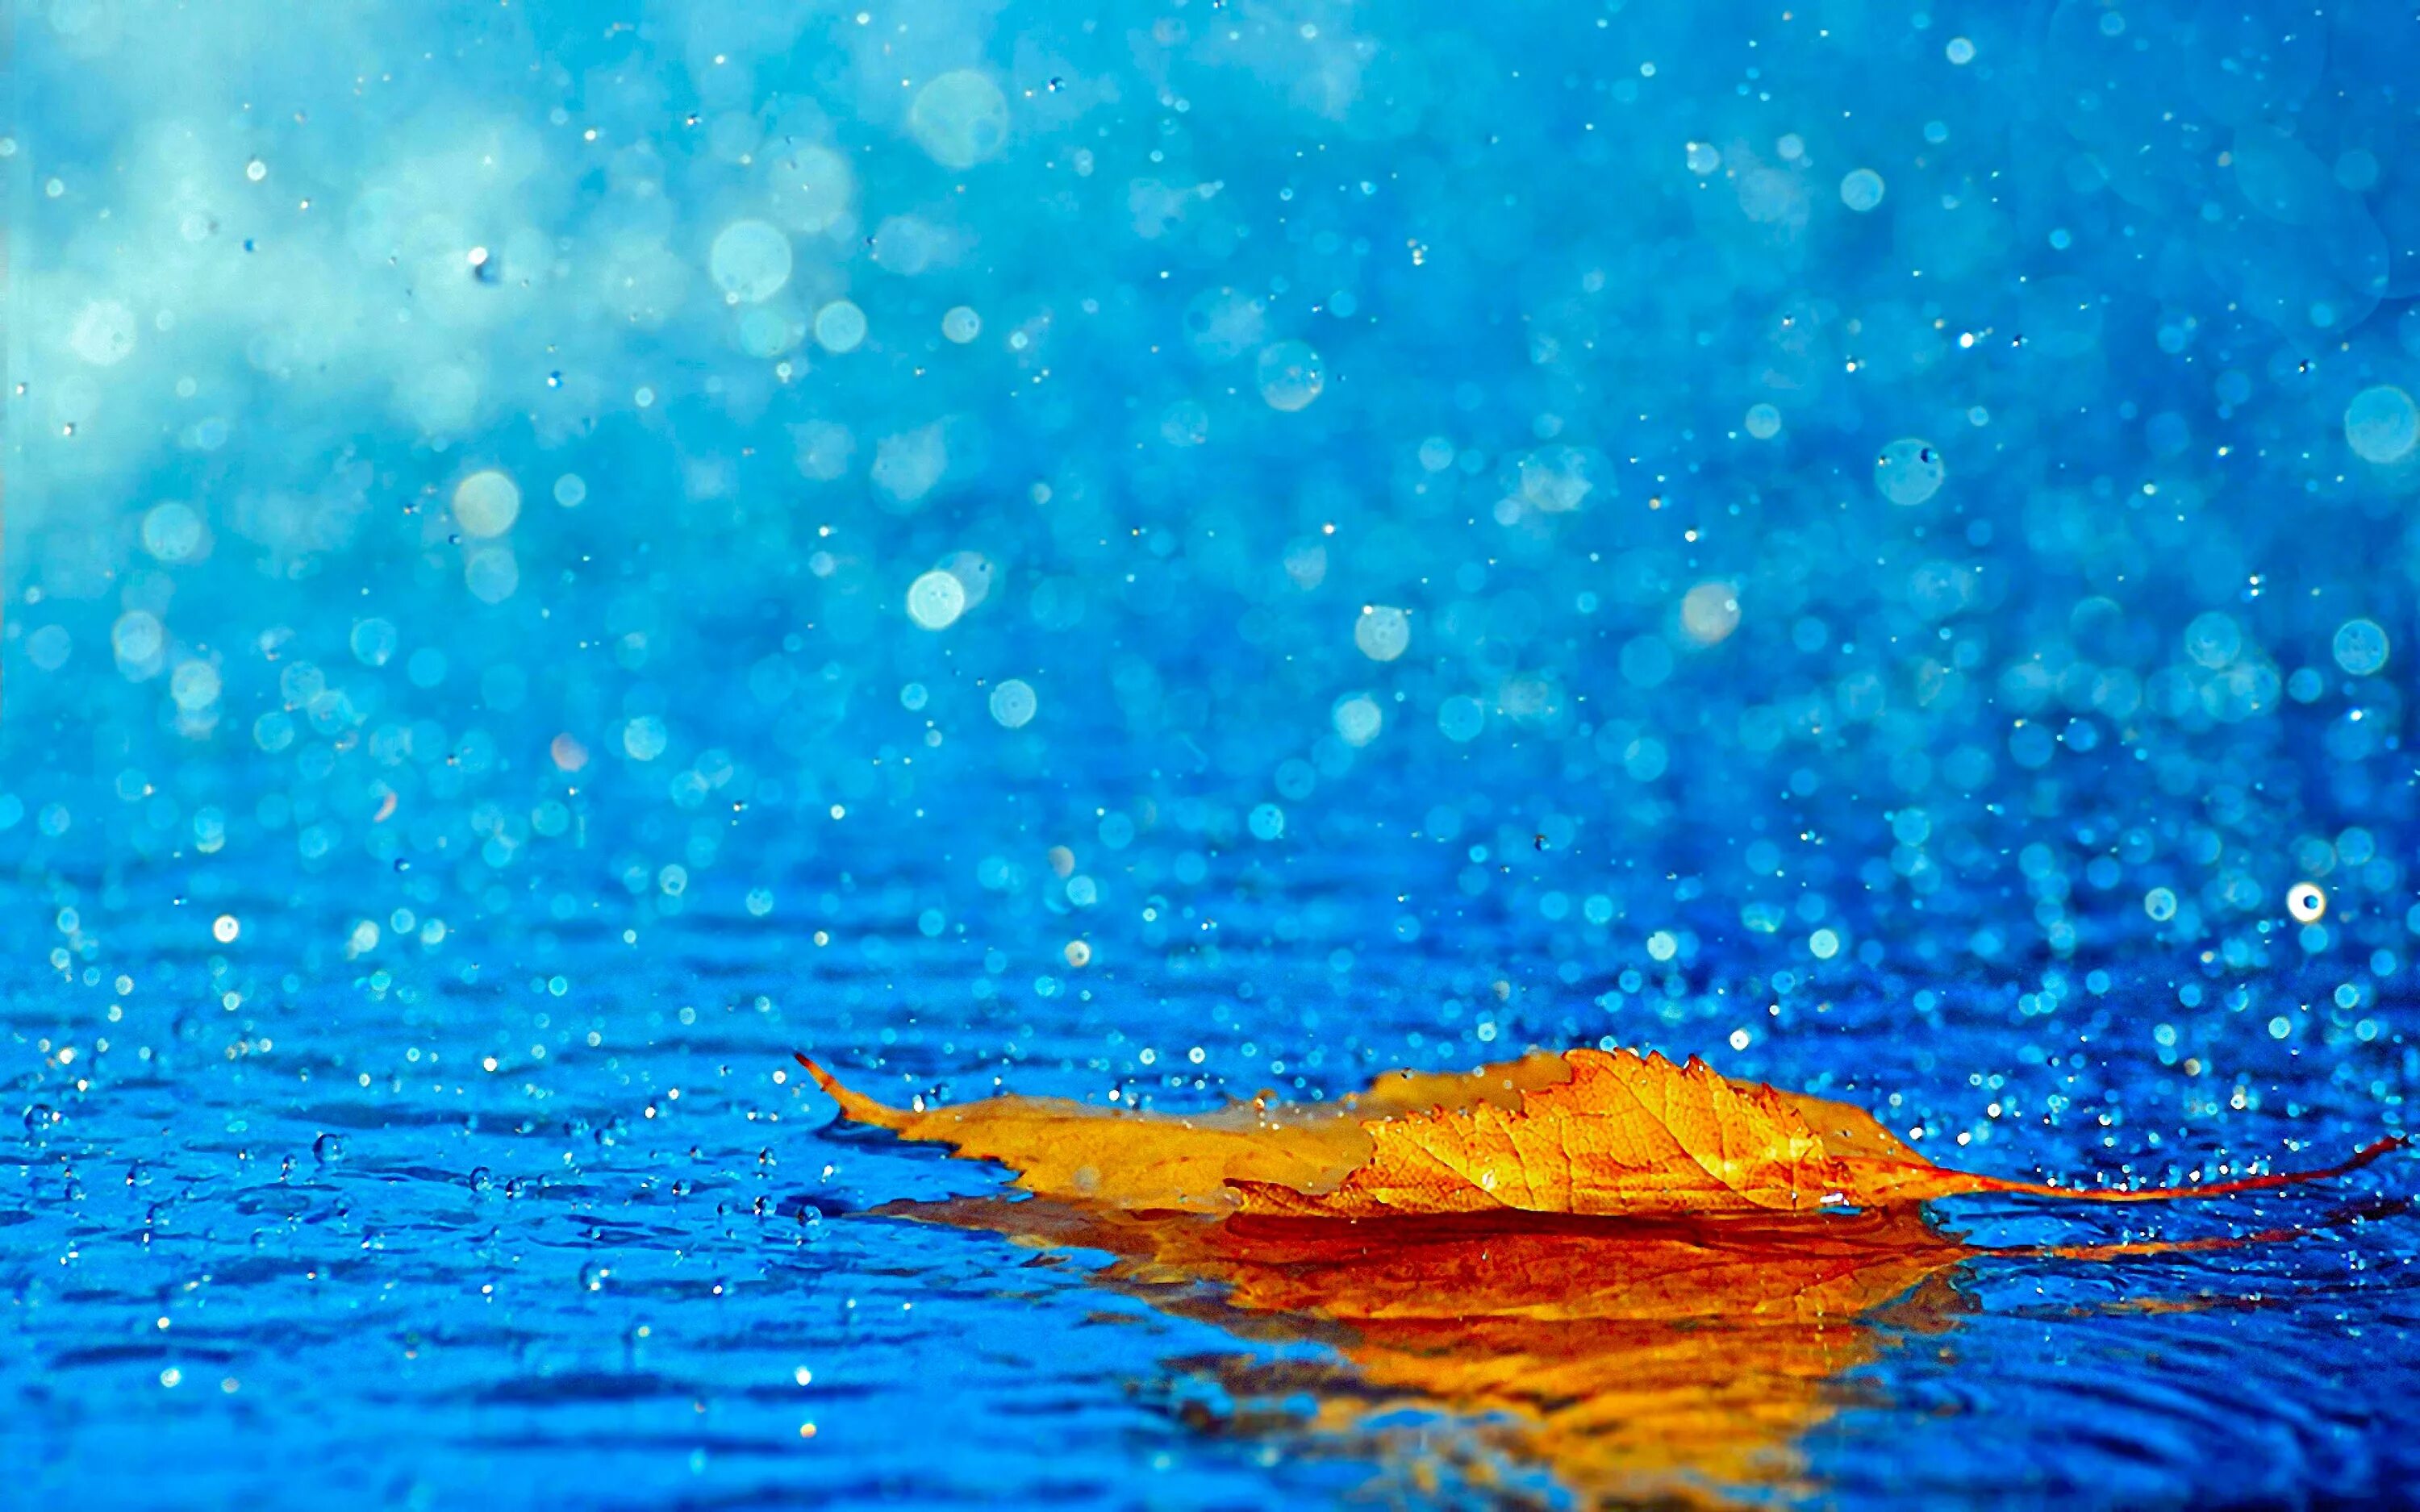 Обои дождь. Обои на рабочий стол дождь. Капли дождя. Листья на воде. Листья в горячей воде